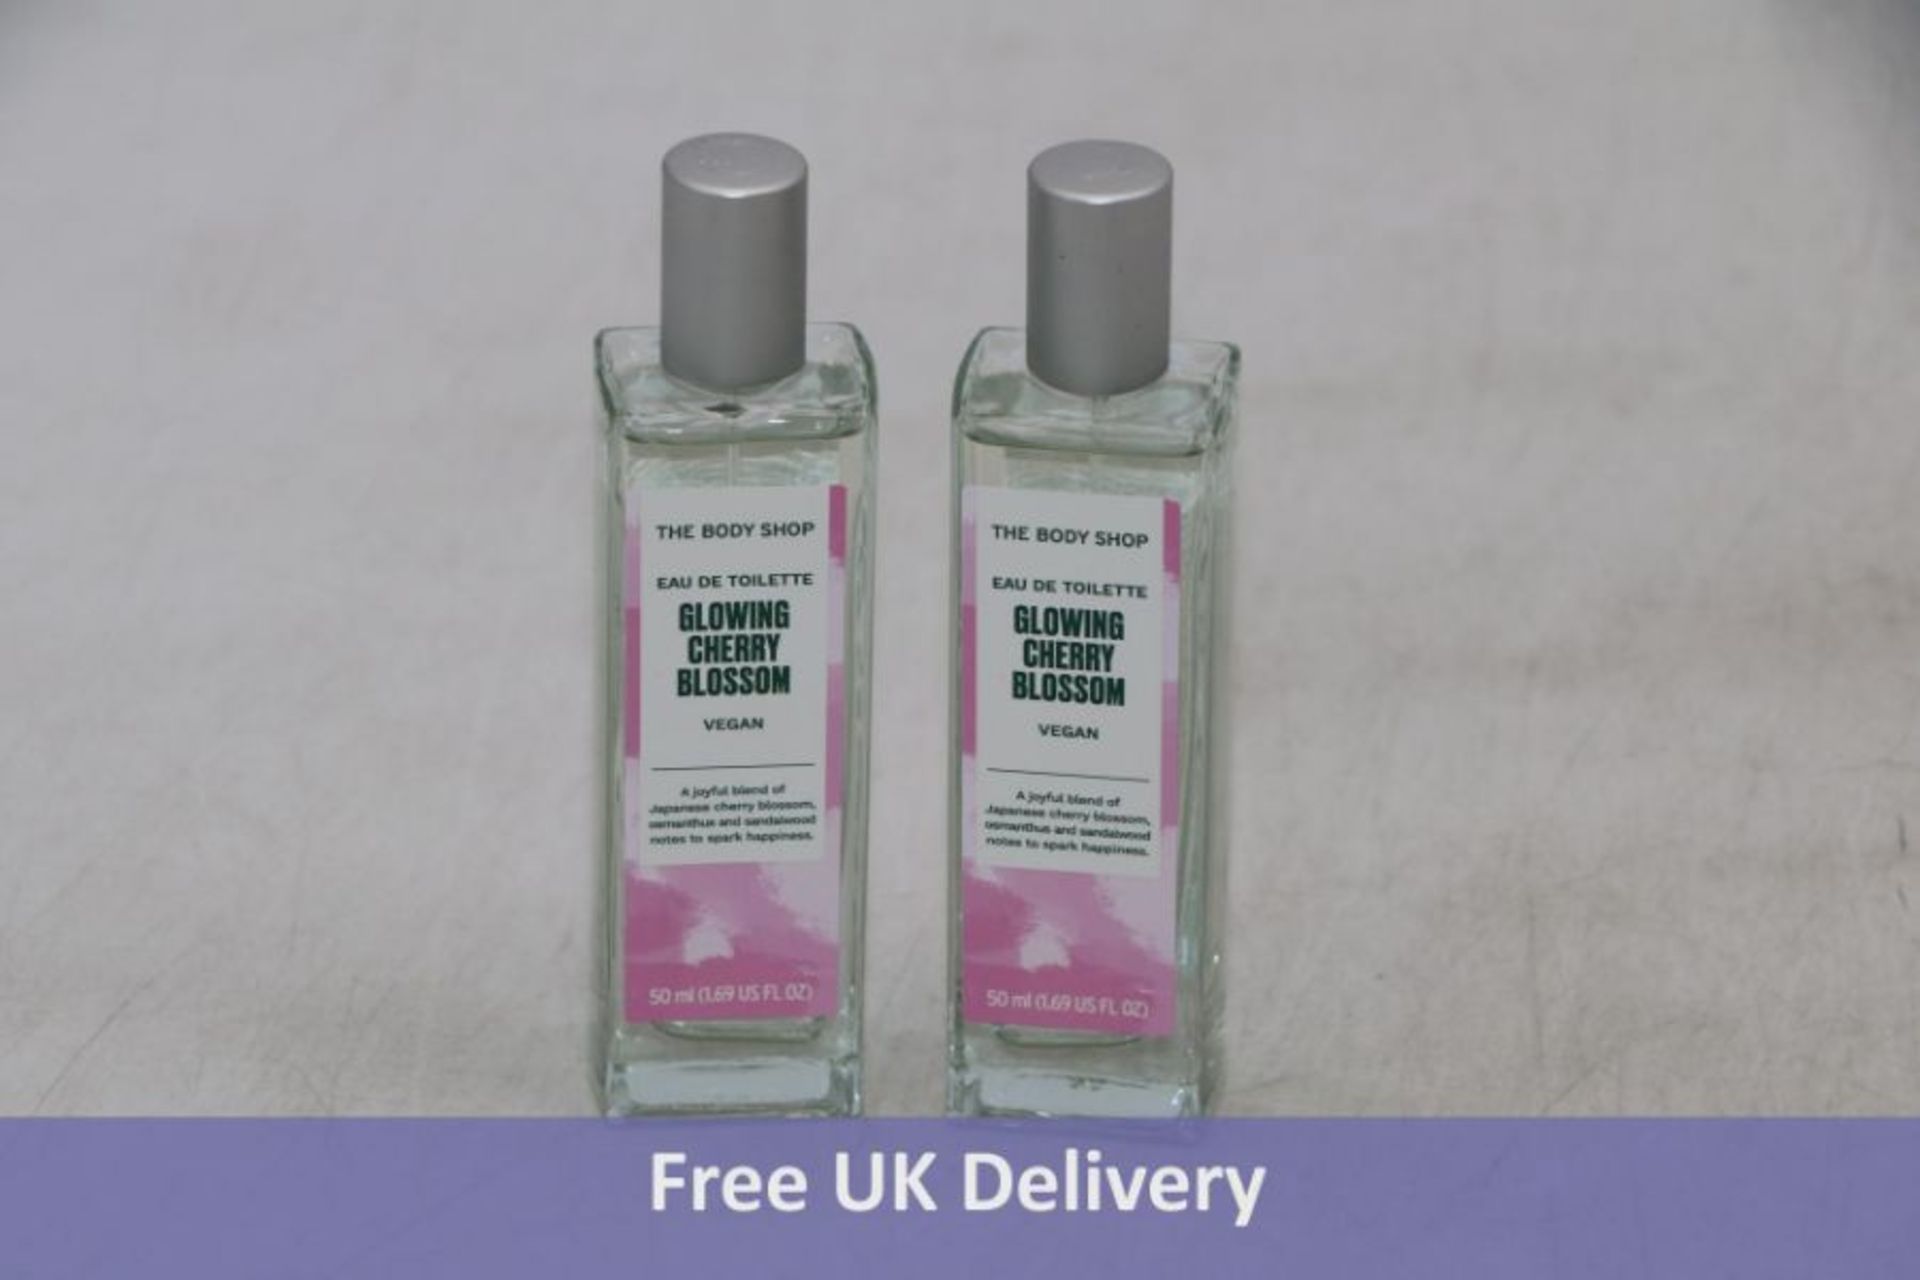 Four The Body Shop Women's, Glowing Cherry Blossom Eau De Toilette 50ml